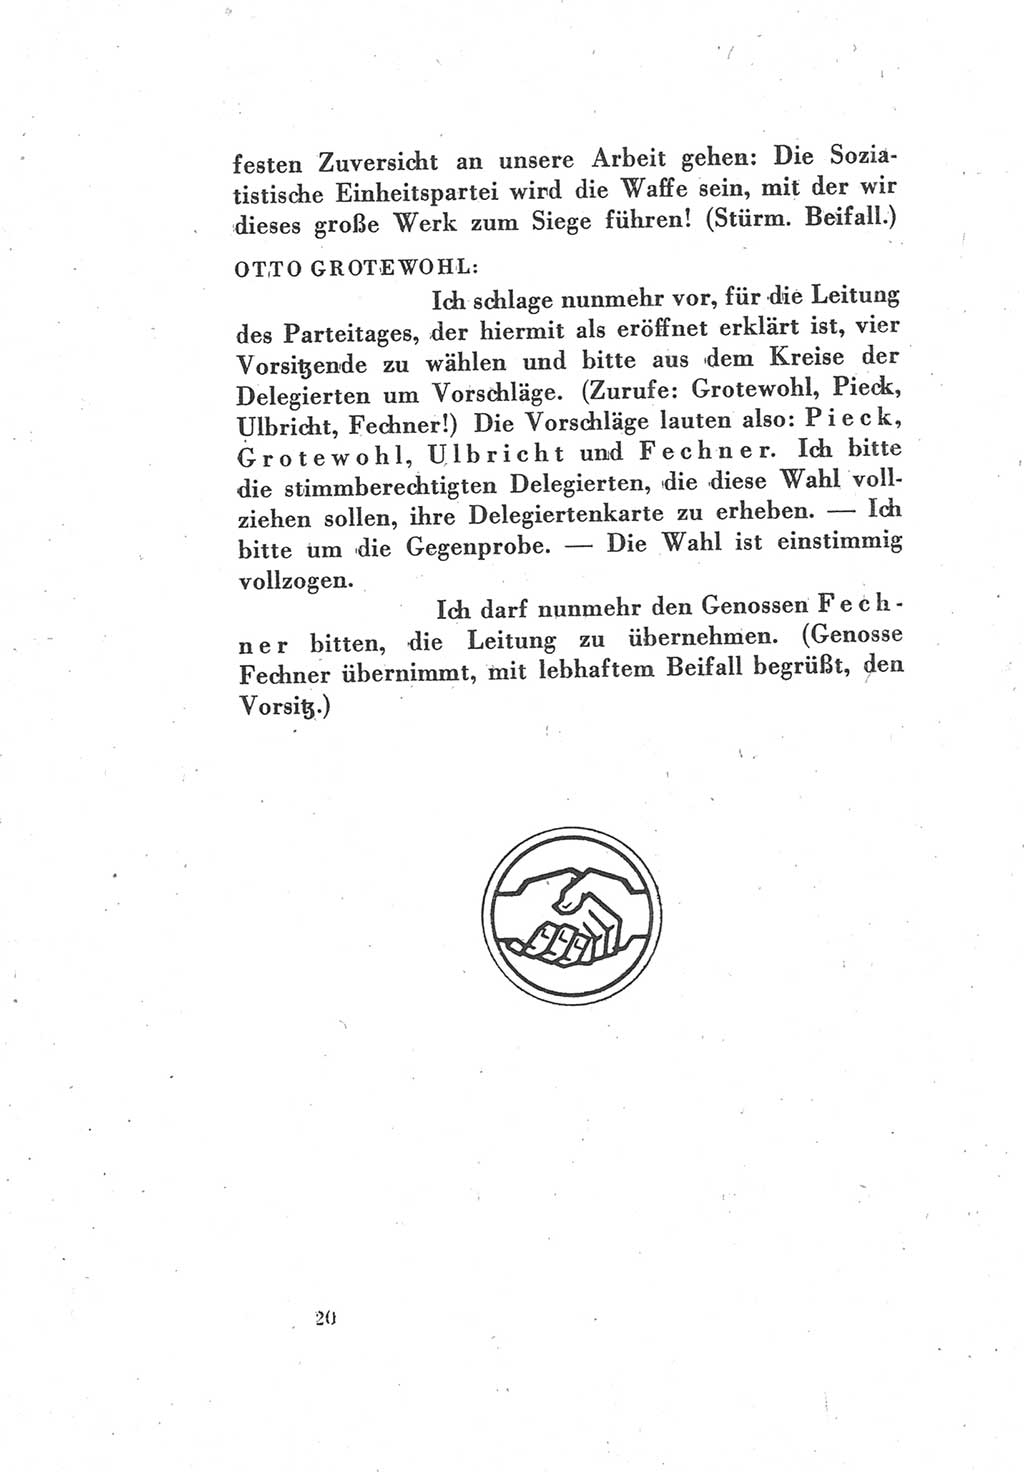 Protokoll des Vereinigungsparteitages der Sozialdemokratischen Partei Deutschlands (SPD) und der Kommunistischen Partei Deutschlands (KPD) [Sowjetische Besatzungszone (SBZ) Deutschlands] 1946, Seite 20 (Prot. VPT SPD KPD SBZ Dtl. 1946, S. 20)